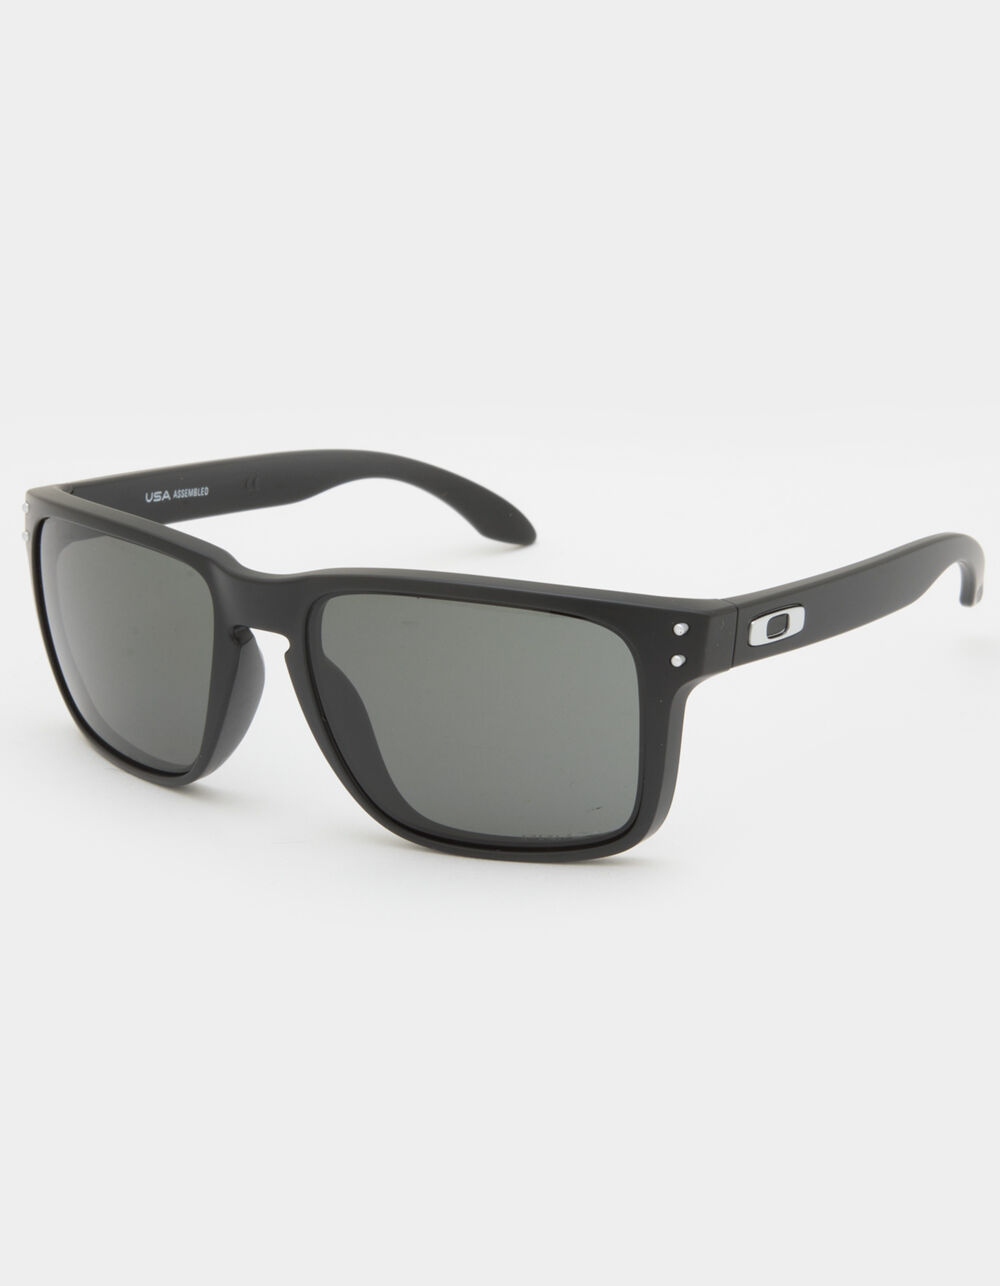 OAKLEY Holbrook XL Matte Black & Prizm Grey Sunglasses - GRAY COMBO | Tillys